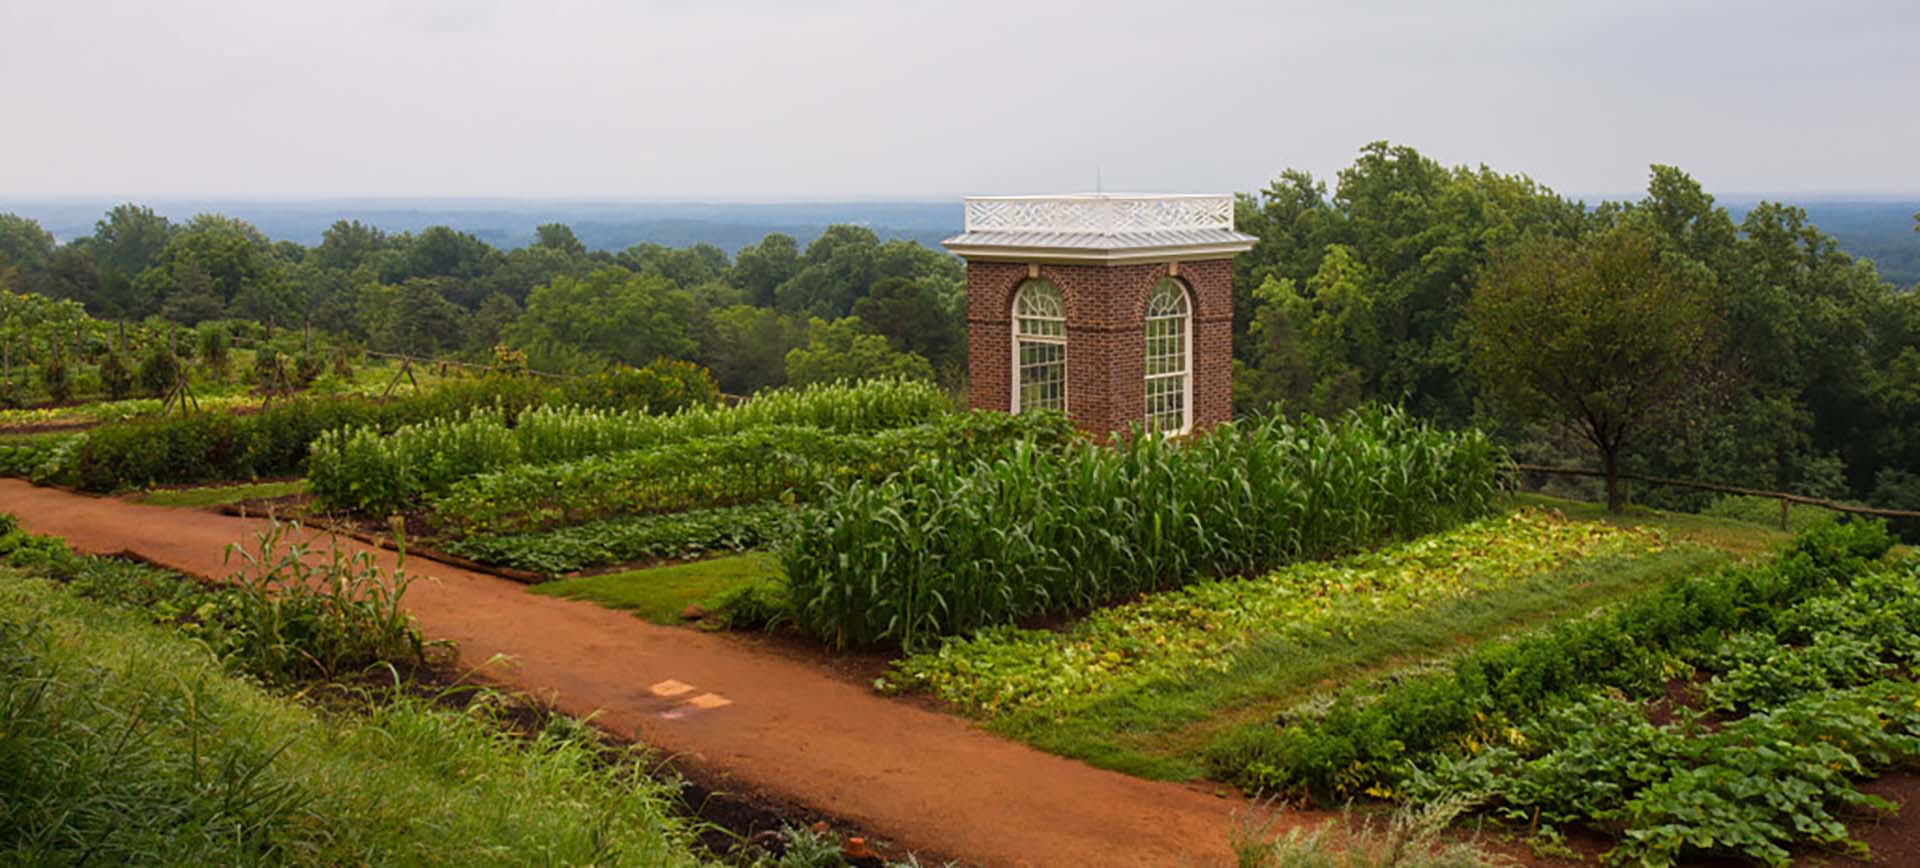 Gardens at Thomas Jefferson's Monticello